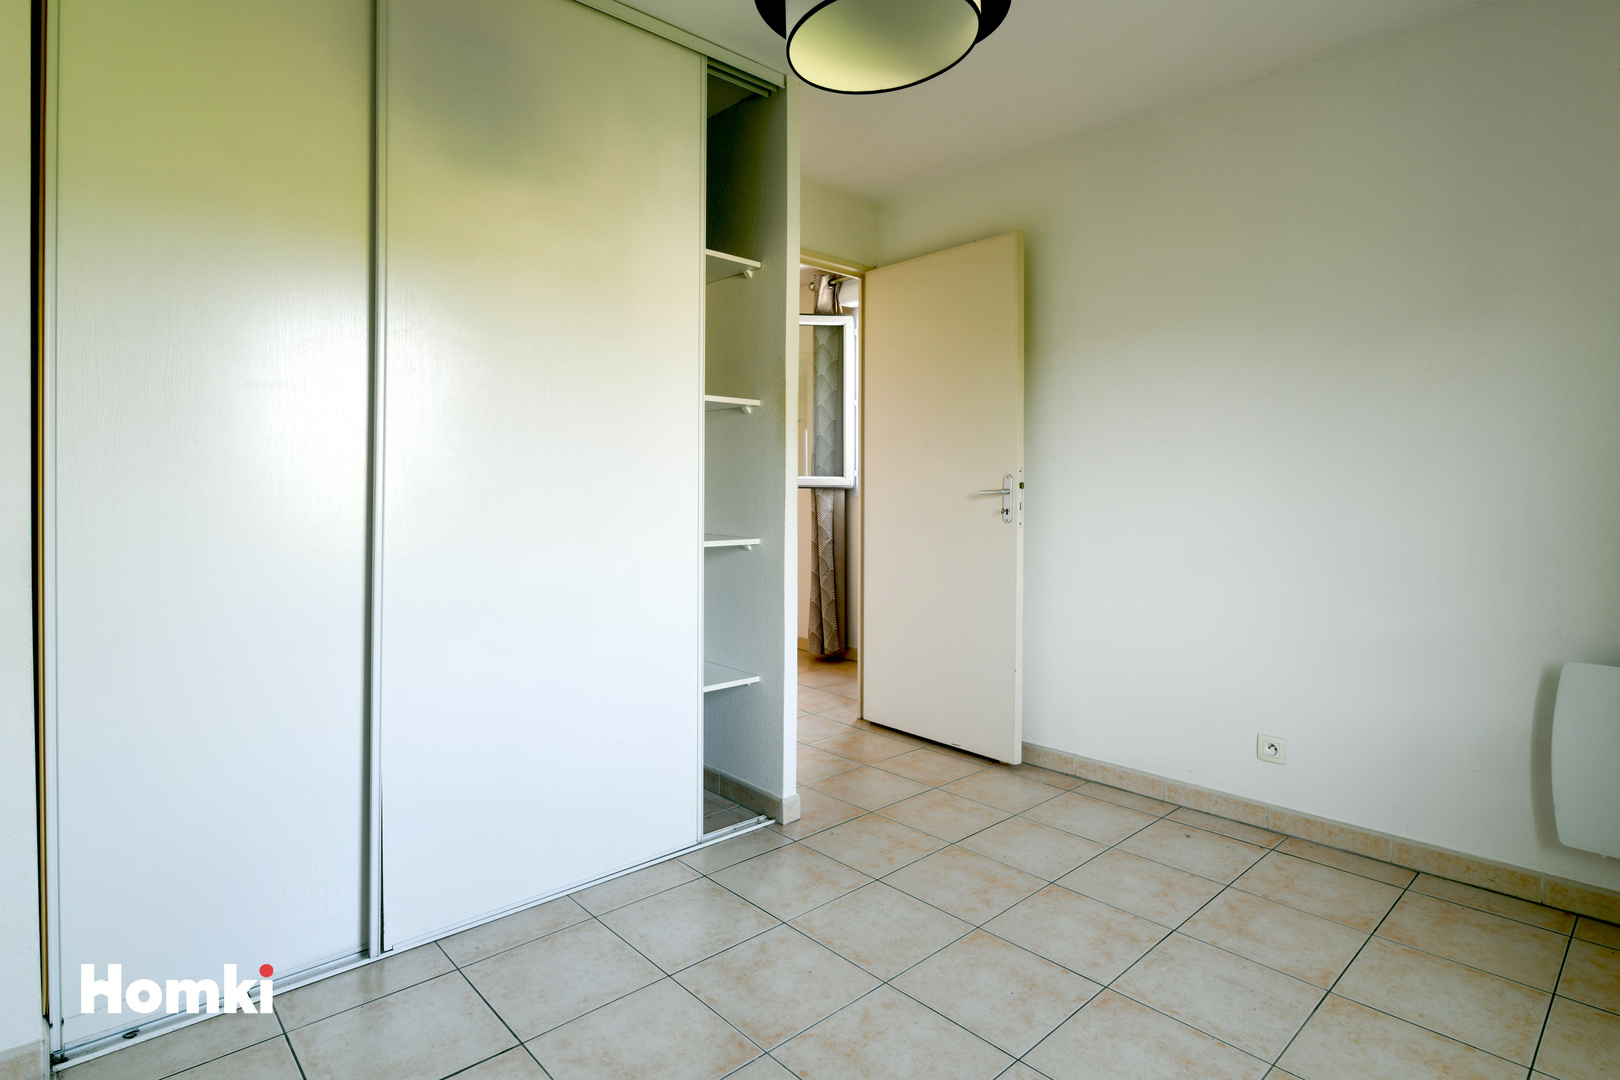 Homki - Vente Appartement  de 54.0 m² à Avignon Montfavet 84140